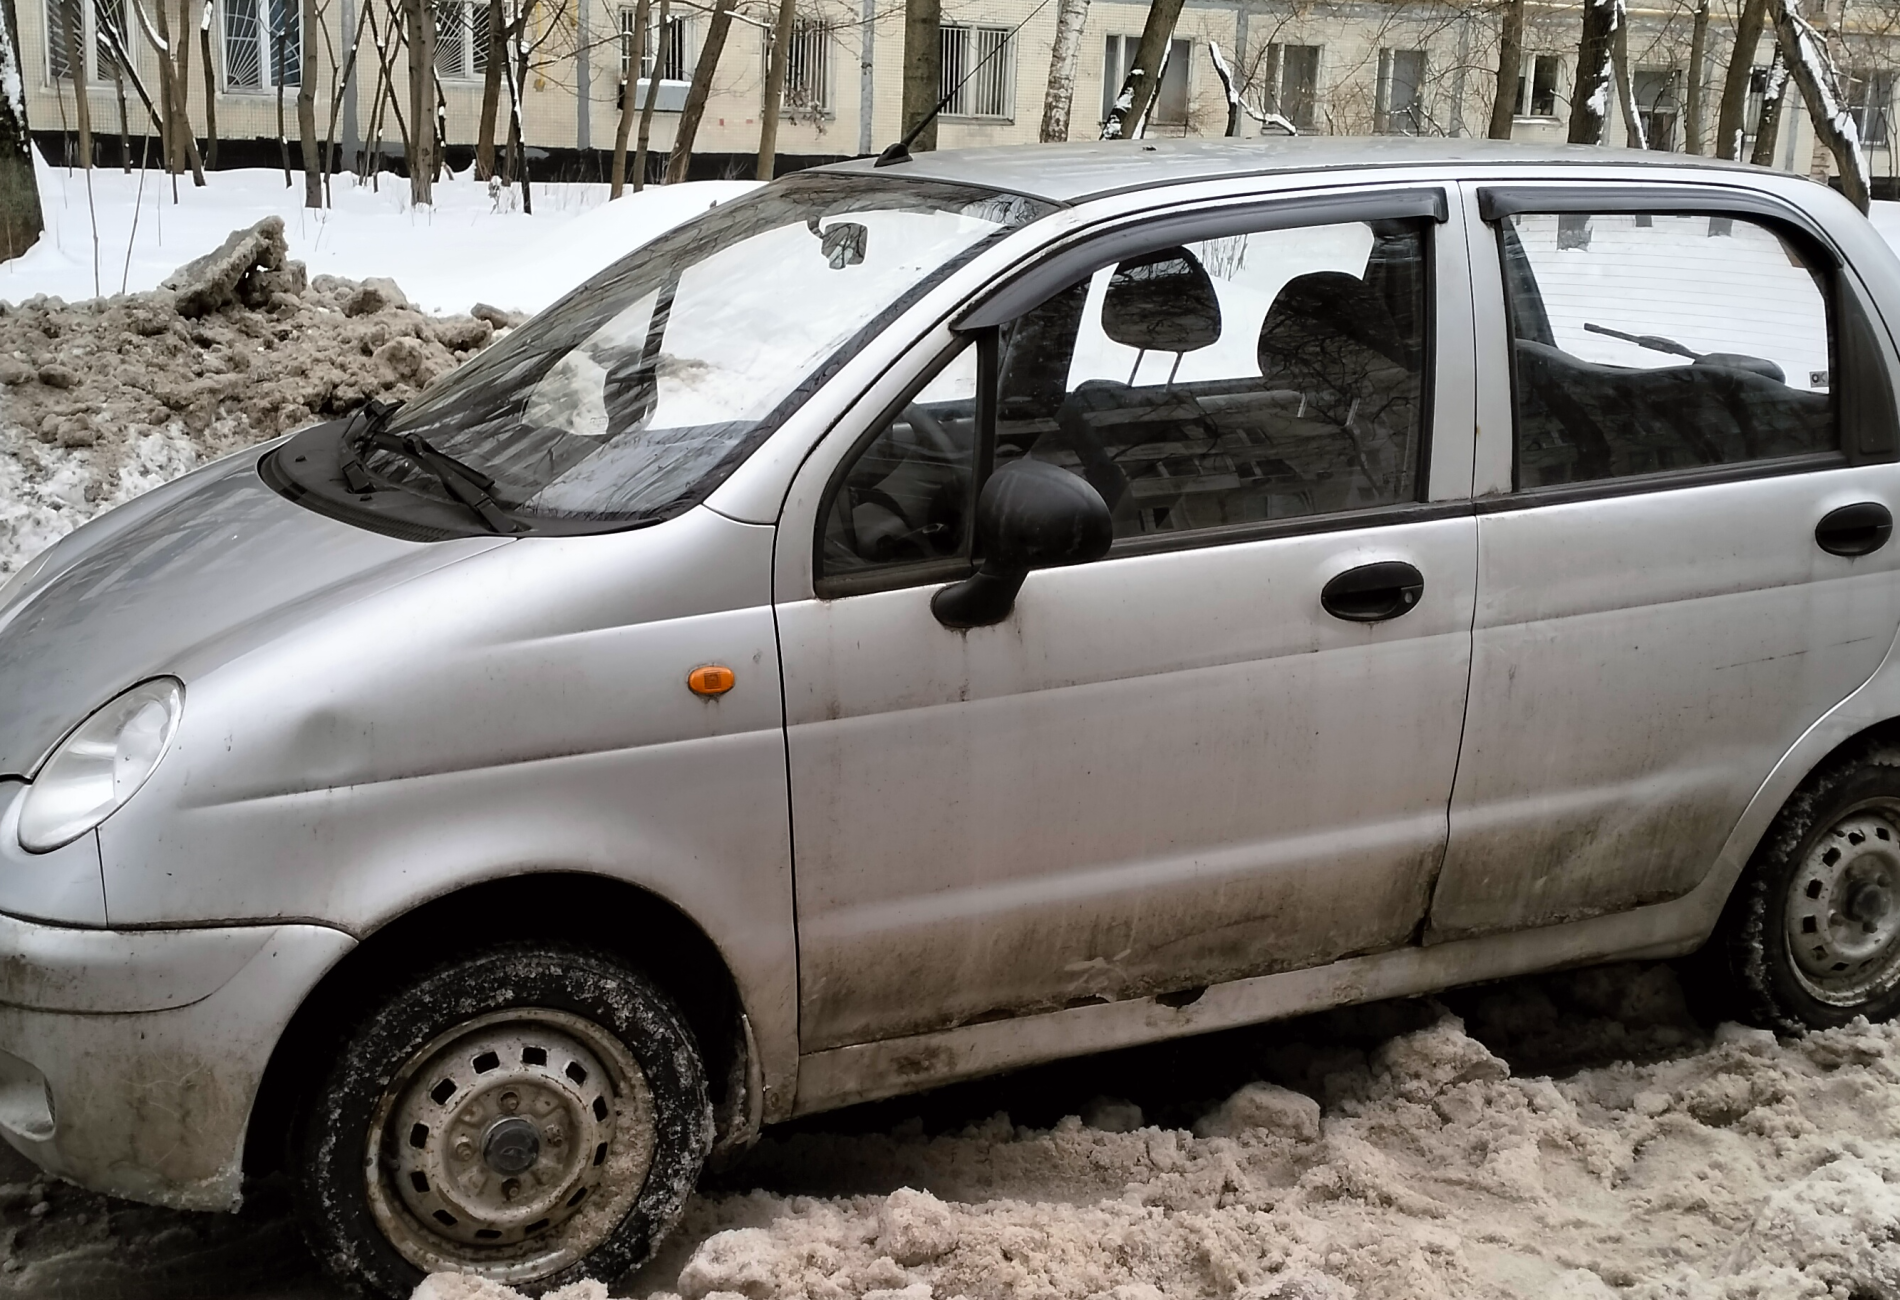 Аренда daewoo matiz эконом класса 2010 года в городе Москва Таганская от 900 руб./сутки, передний привод, двигатель: бензин, объем 0.8 литров, ОСАГО (Впишу в полис), без водителя, недорого, вид 2 - RentRide